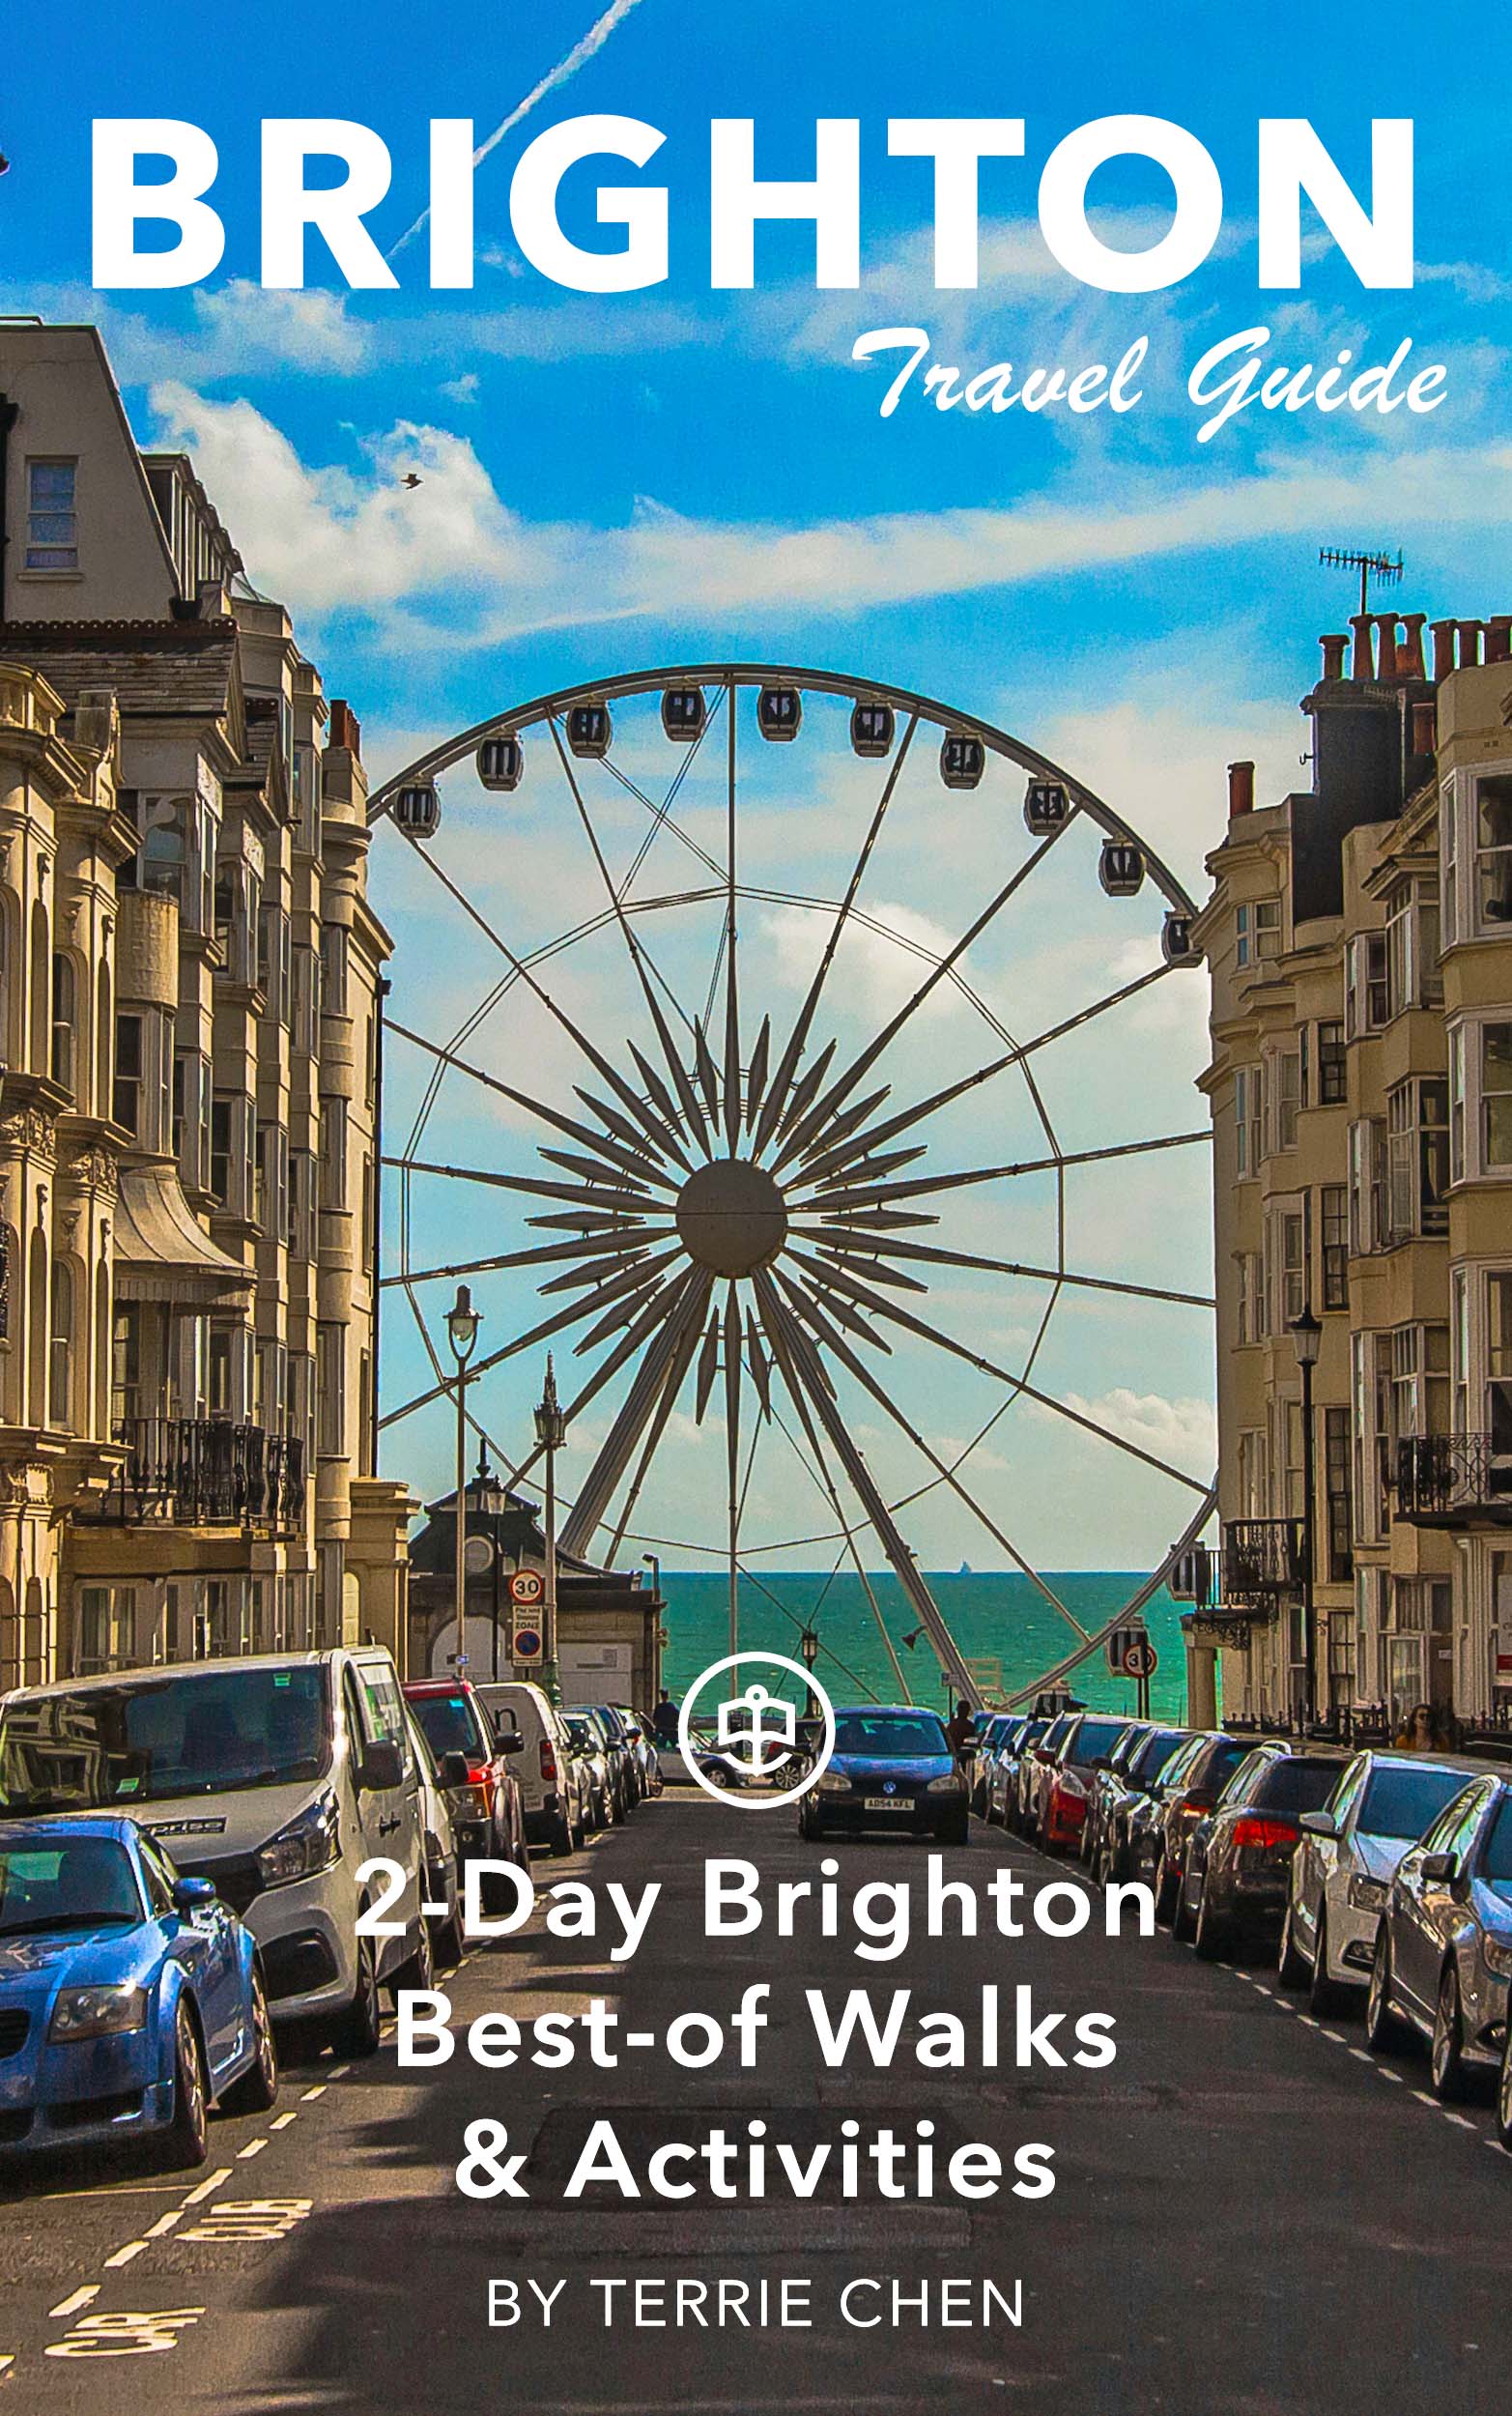 2-Day Brighton Best-of Walks & Activities